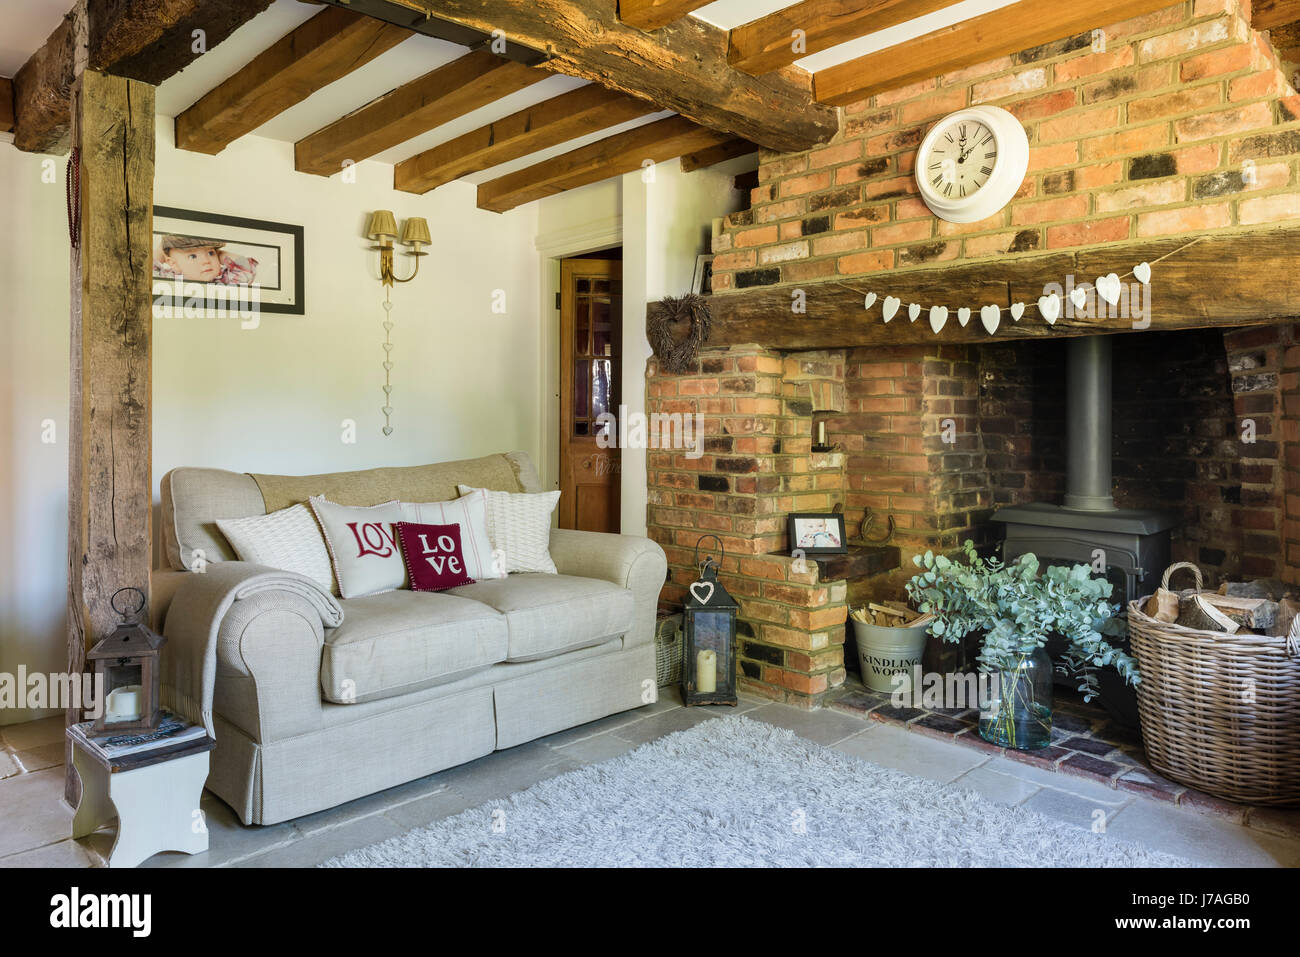 Confortable salon avec cheminée, mur en briques apparentes et de poutres apparentes au plafond. La crème canapé est de Laura Ashley et le tapis de John Lewi Banque D'Images